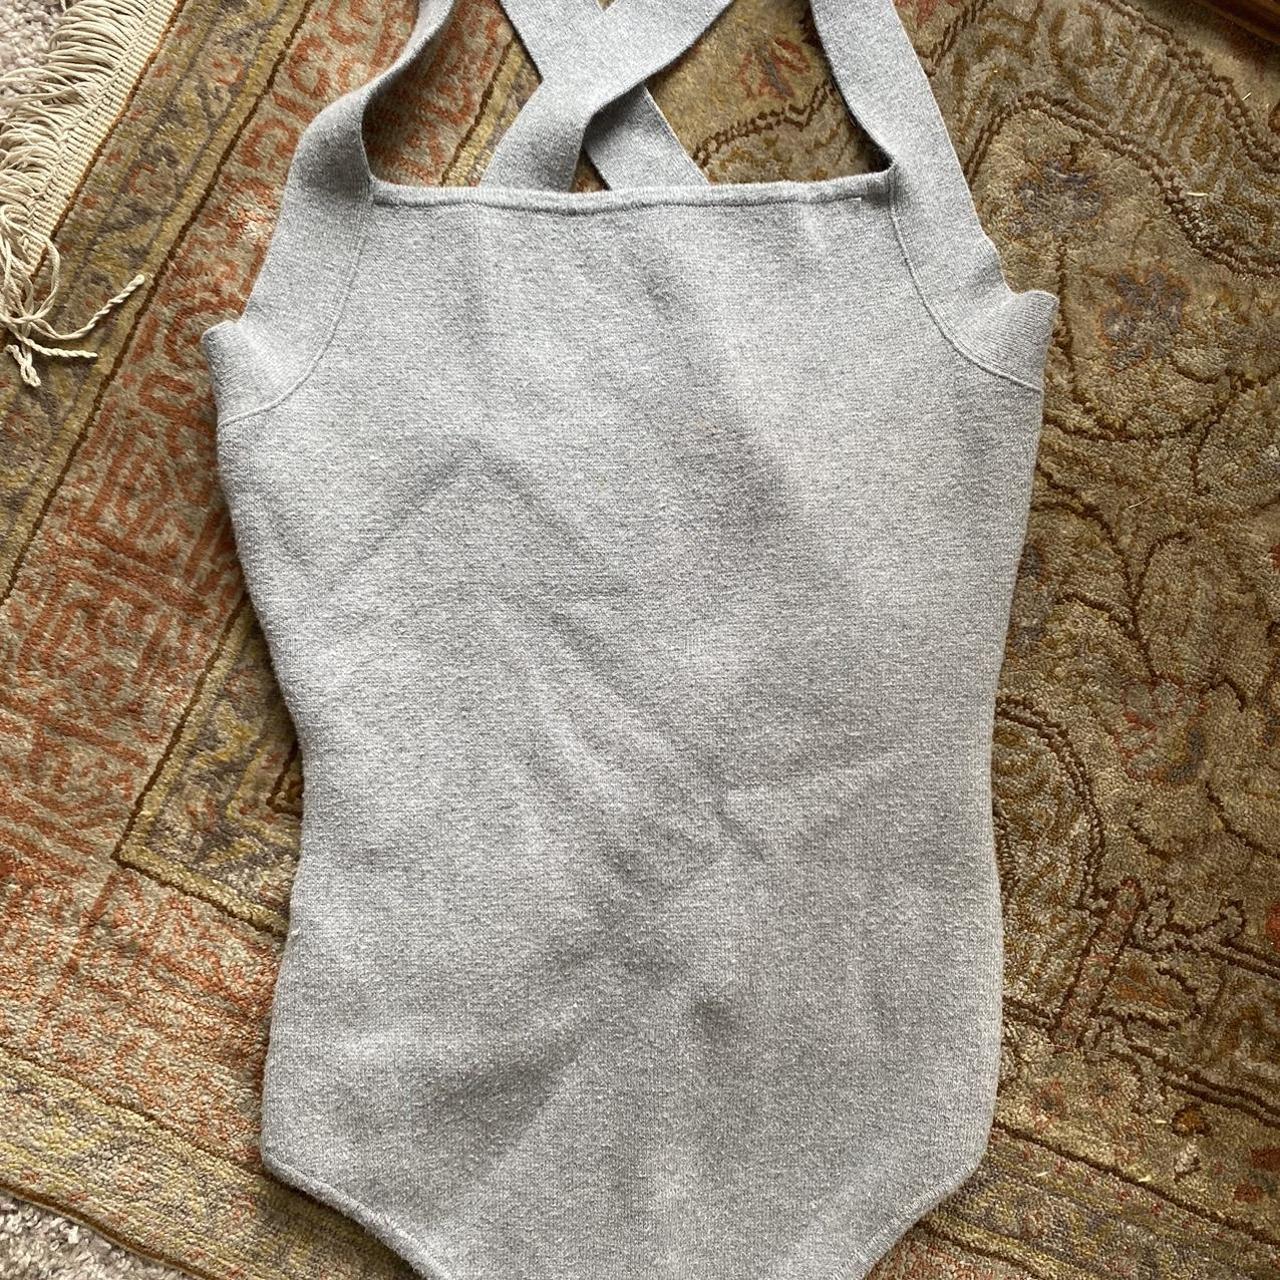 Abercrombie & Fitch Women's Grey Bodysuit (2)